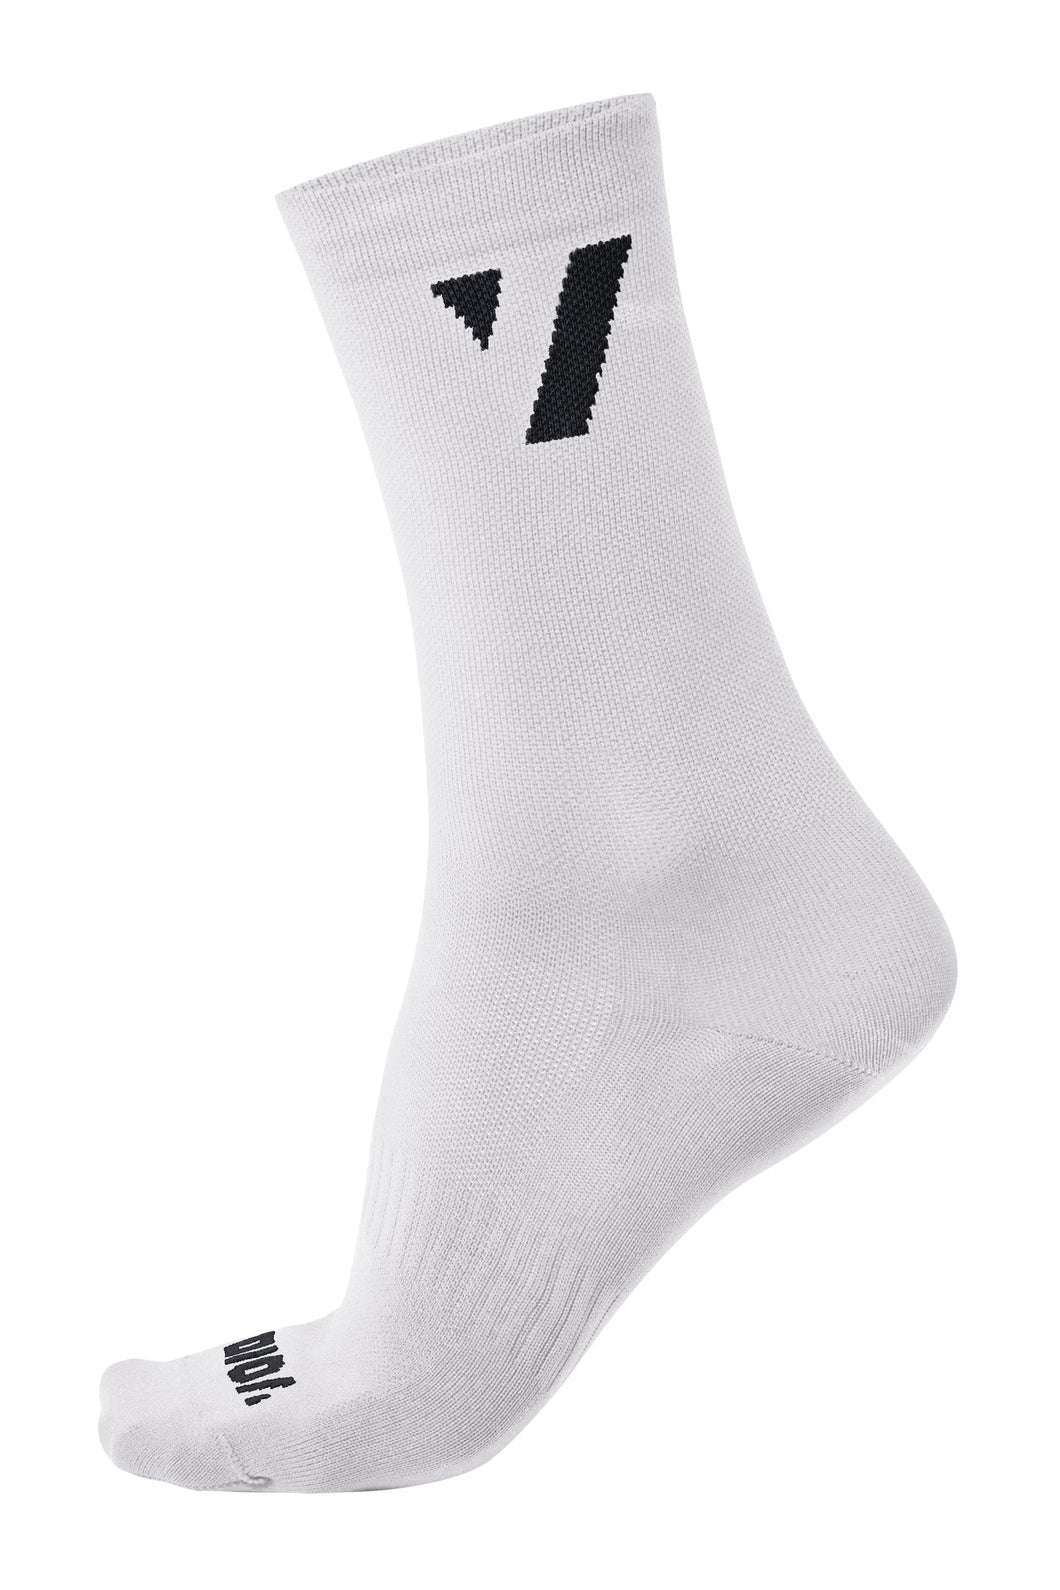 VOID Performance Socks 16 - White